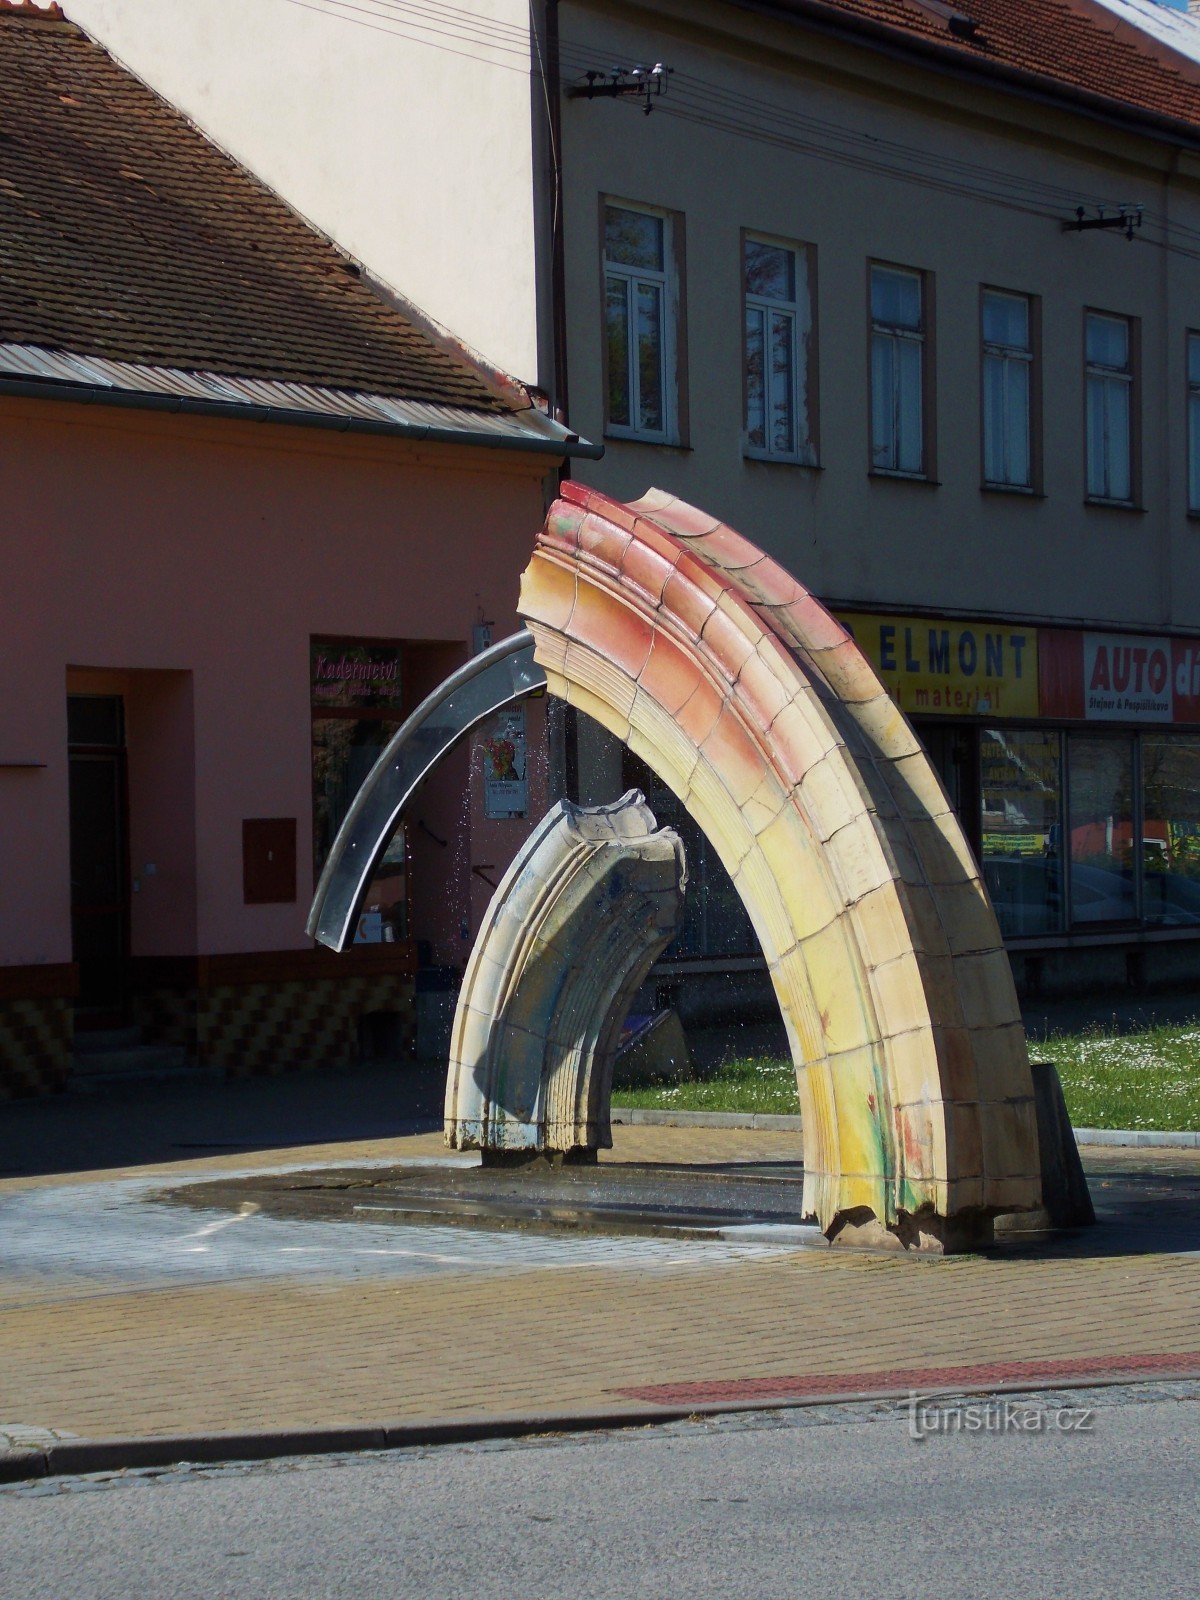 Dvije fontane - ukrasi grada u Bystřice pod Hostýnem